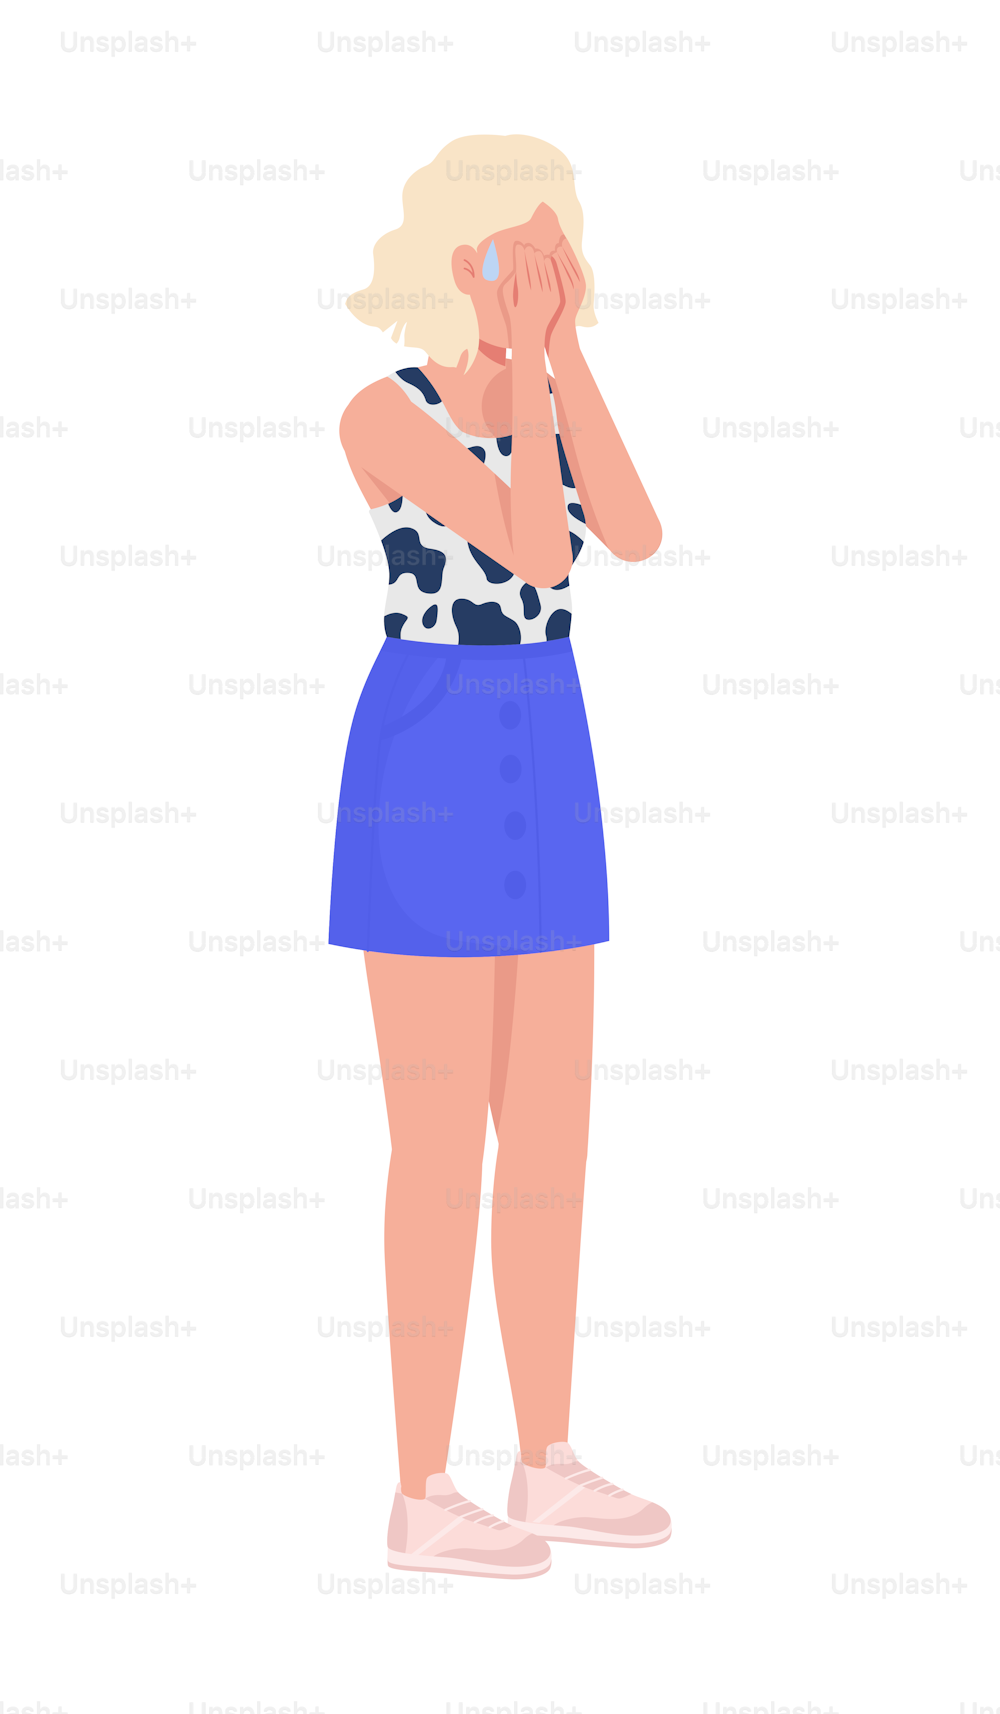 화가 난 여자는 얼굴을 닫는 세미 플랫 컬러 벡터 캐릭터입니다. 슬픔 표현. 편집 가능한 그림입니다. 흰색에 전신 사람. 웹 그래픽 디자인 및 애니메이션을 위한 간단한 만화 스타일 일러스트레이션